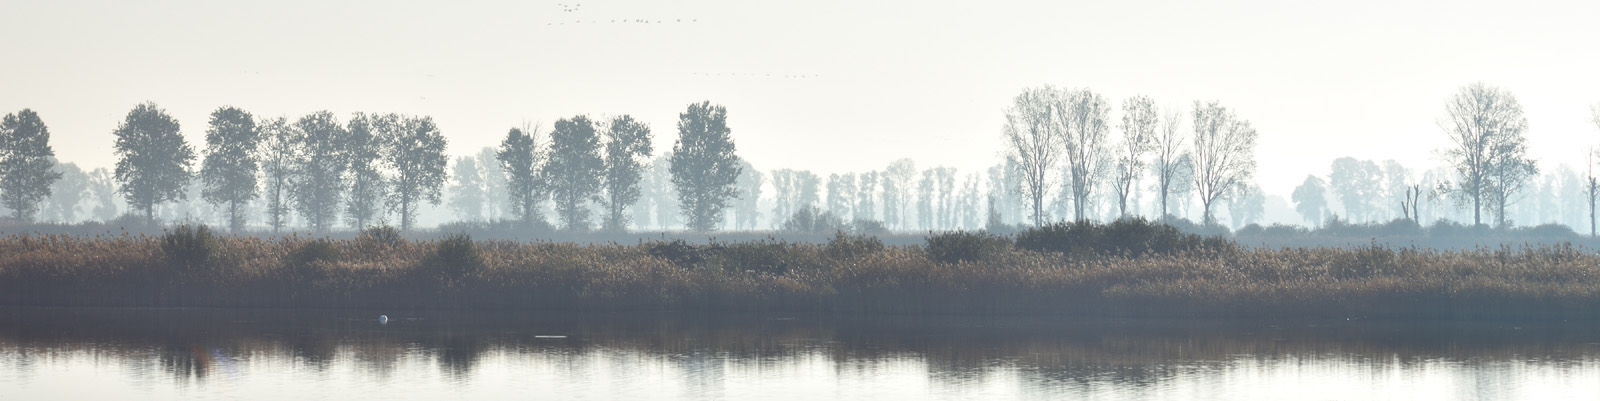 Uferlinie mit Baeumen im Nebel